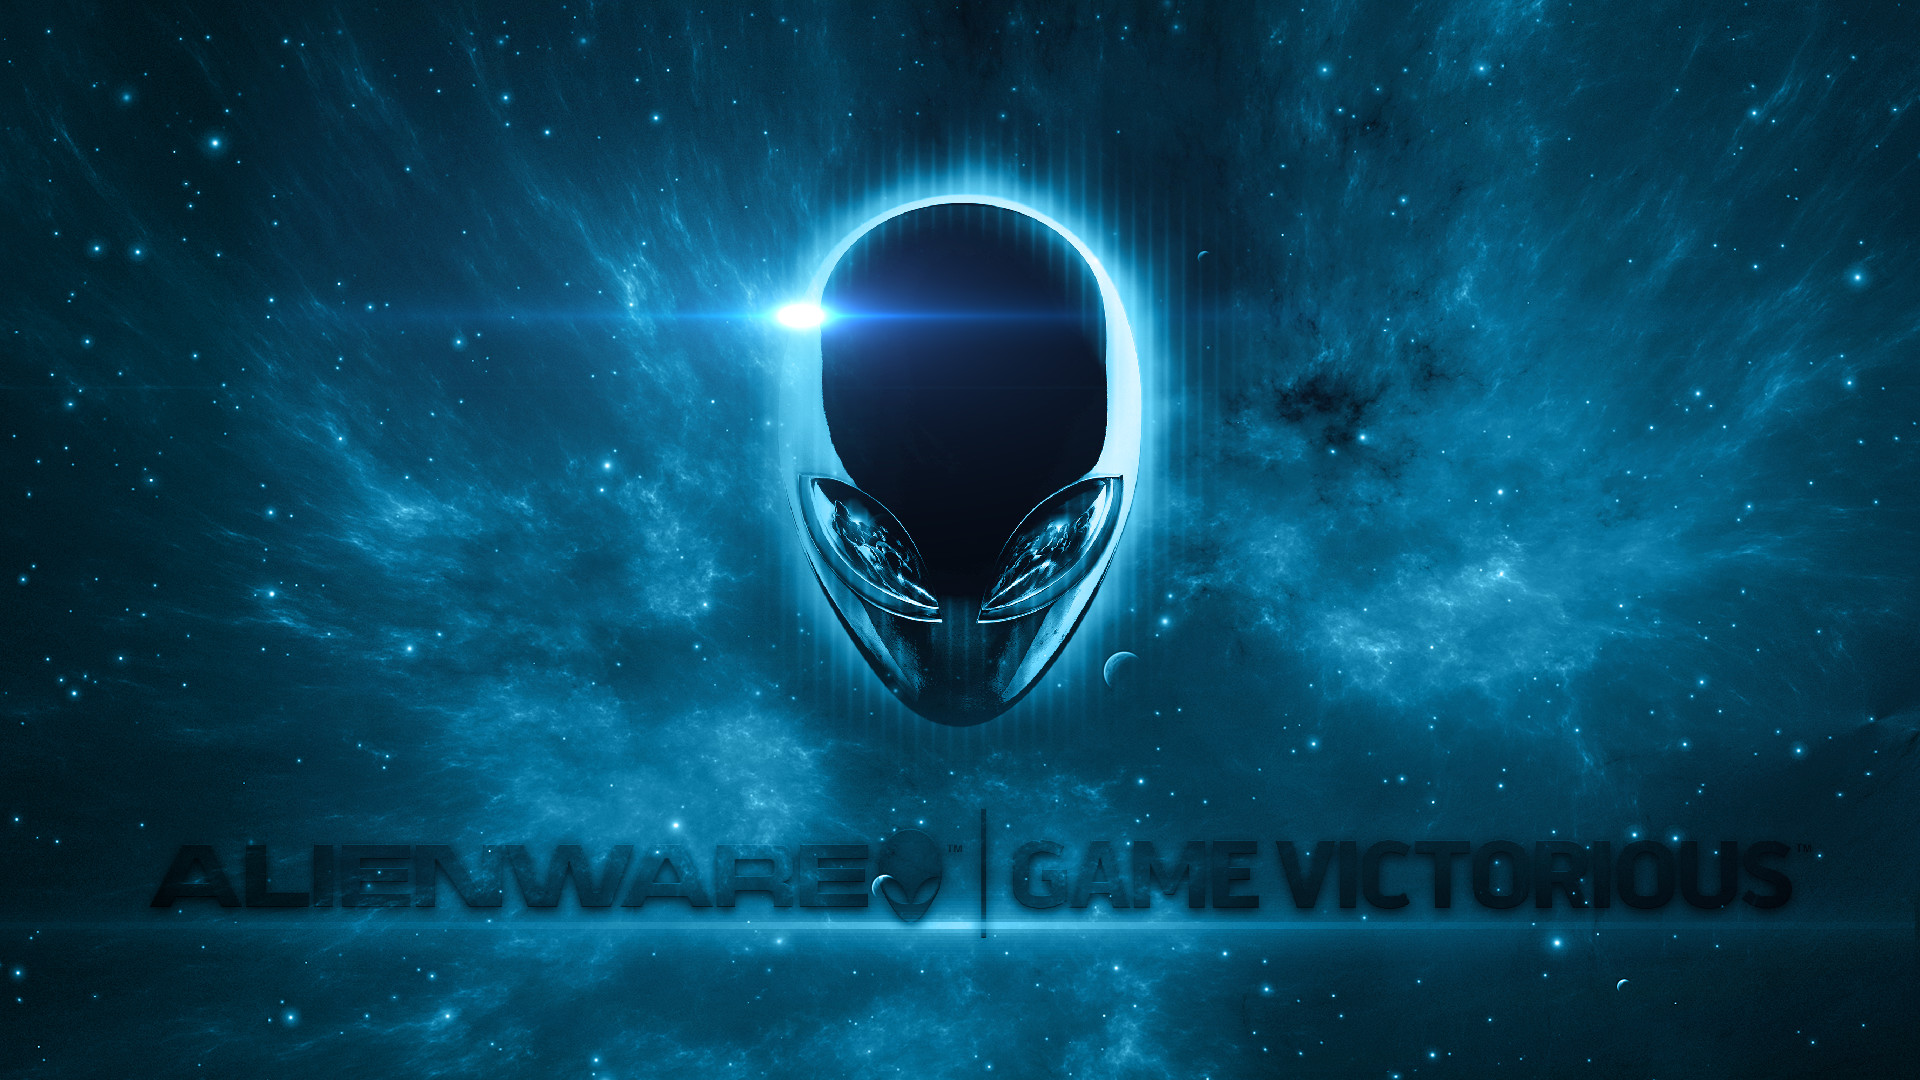 Alienware 4K  Logo Wallpapers